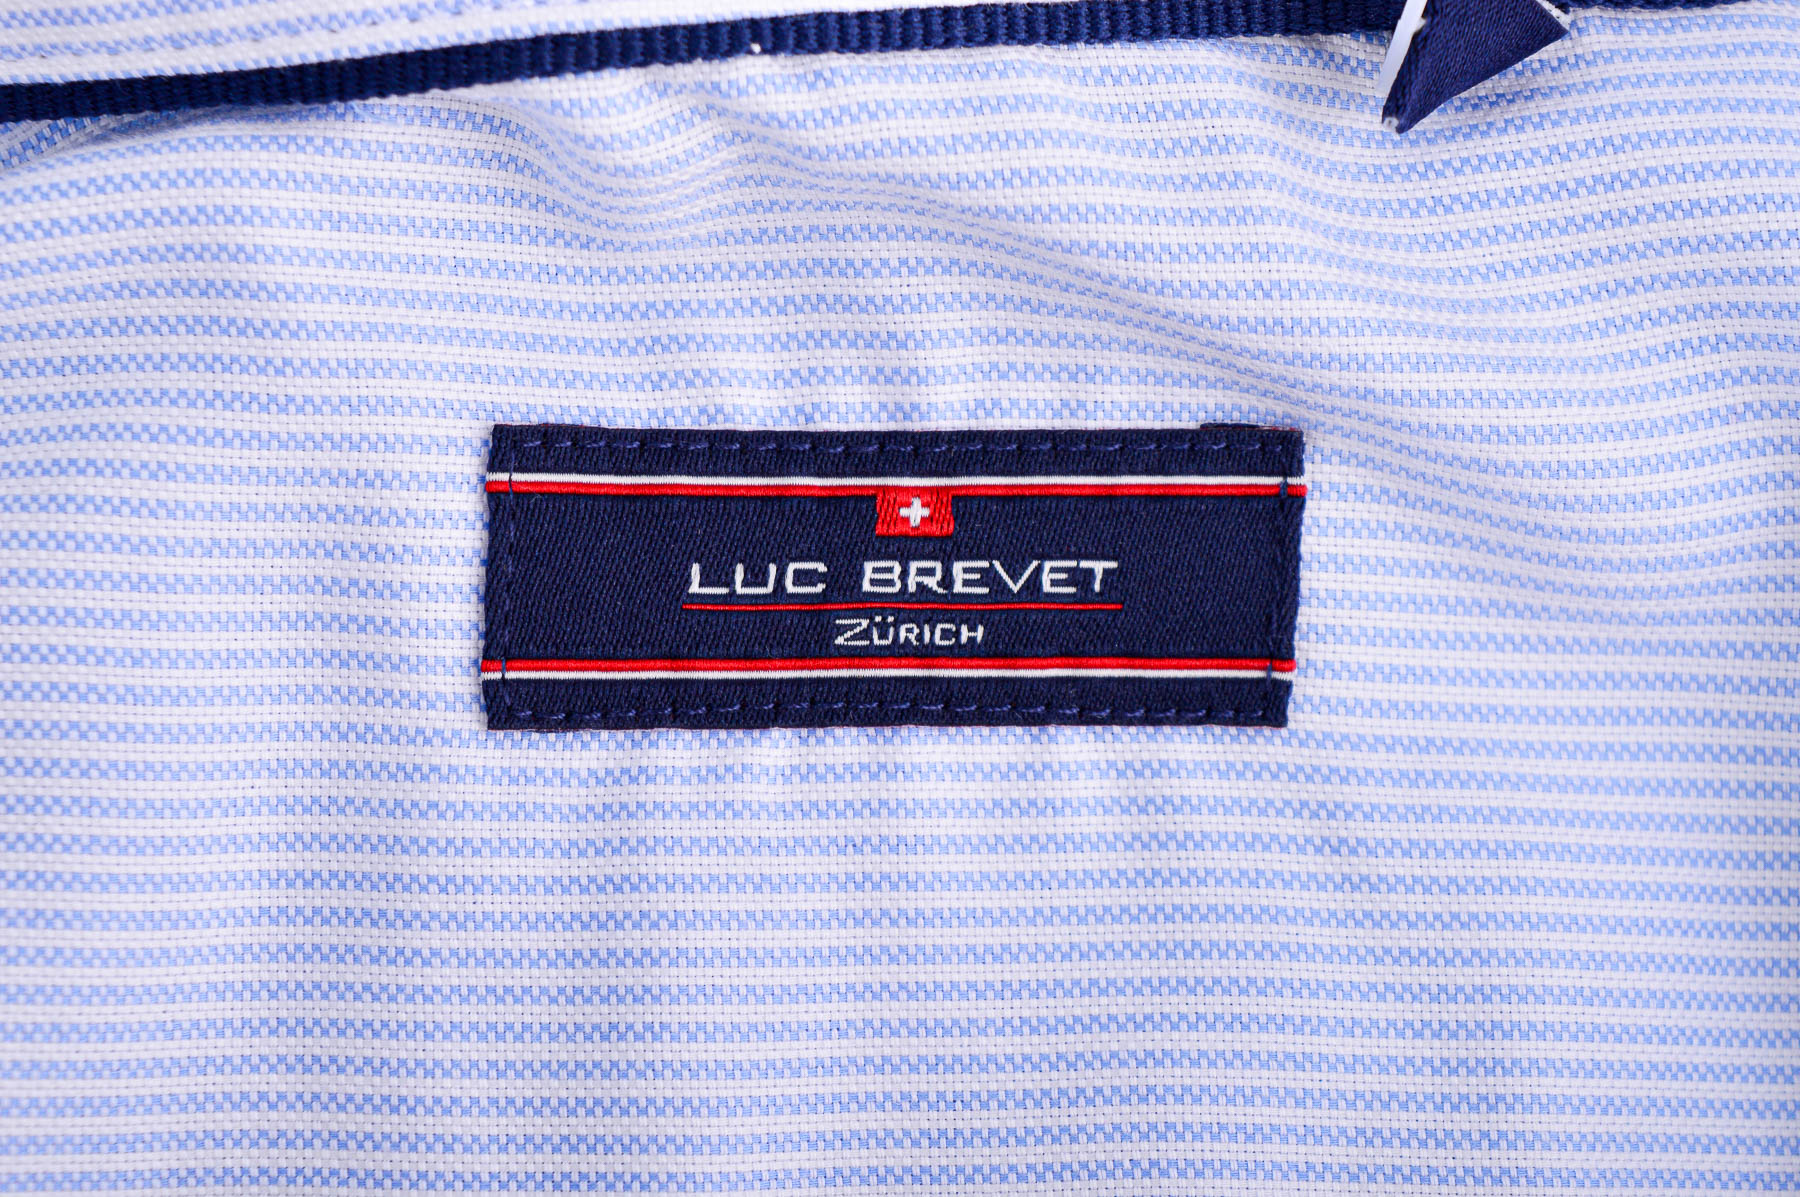 Men's shirt - Luc Brevet - 2